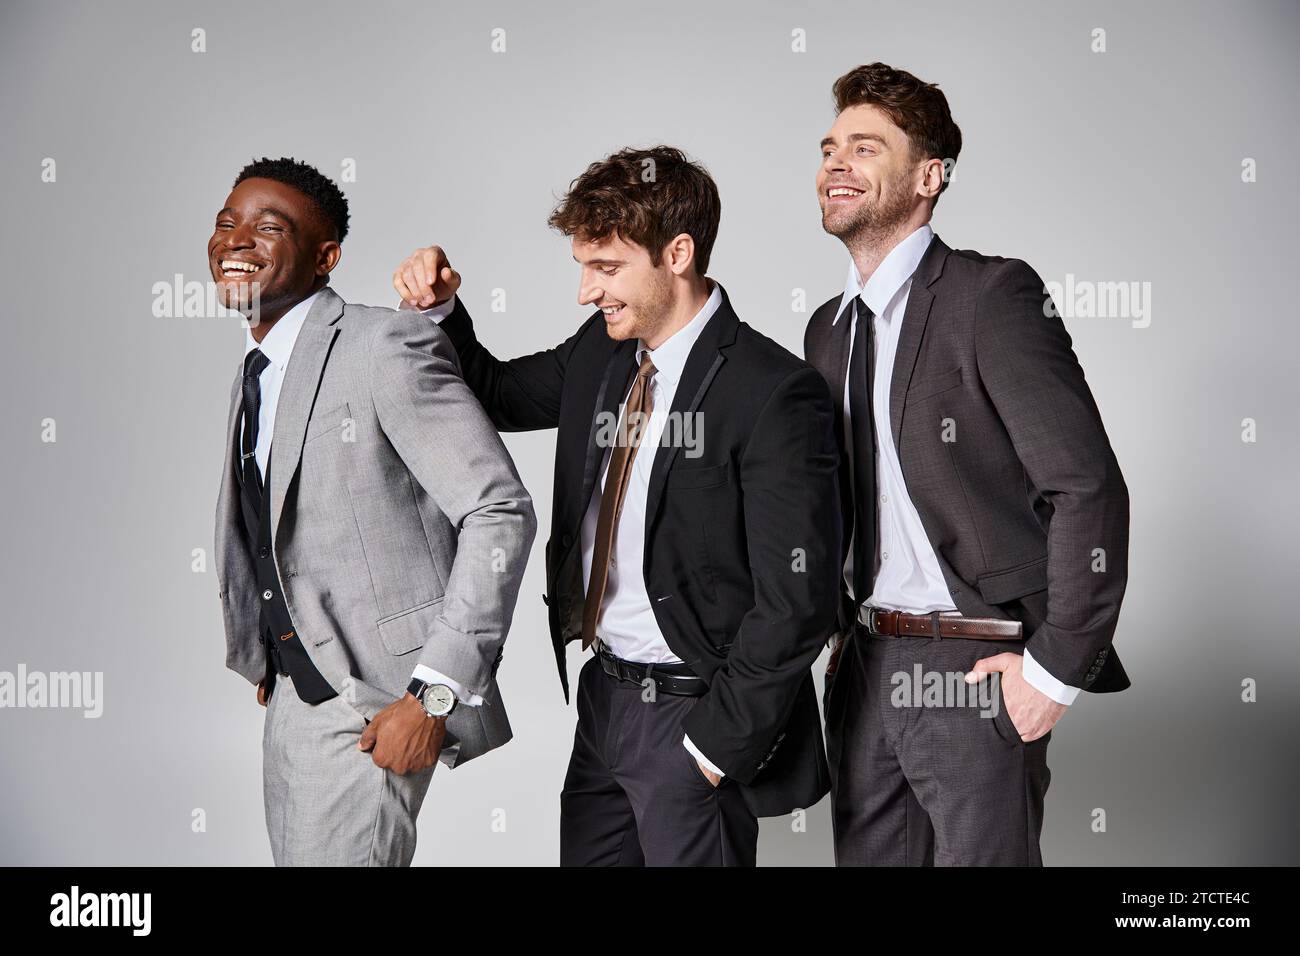 Attraktive, glückliche multikulturelle männliche Models in eleganten Anzügen, die aufrichtig vor grauem Hintergrund lächeln Stockfoto